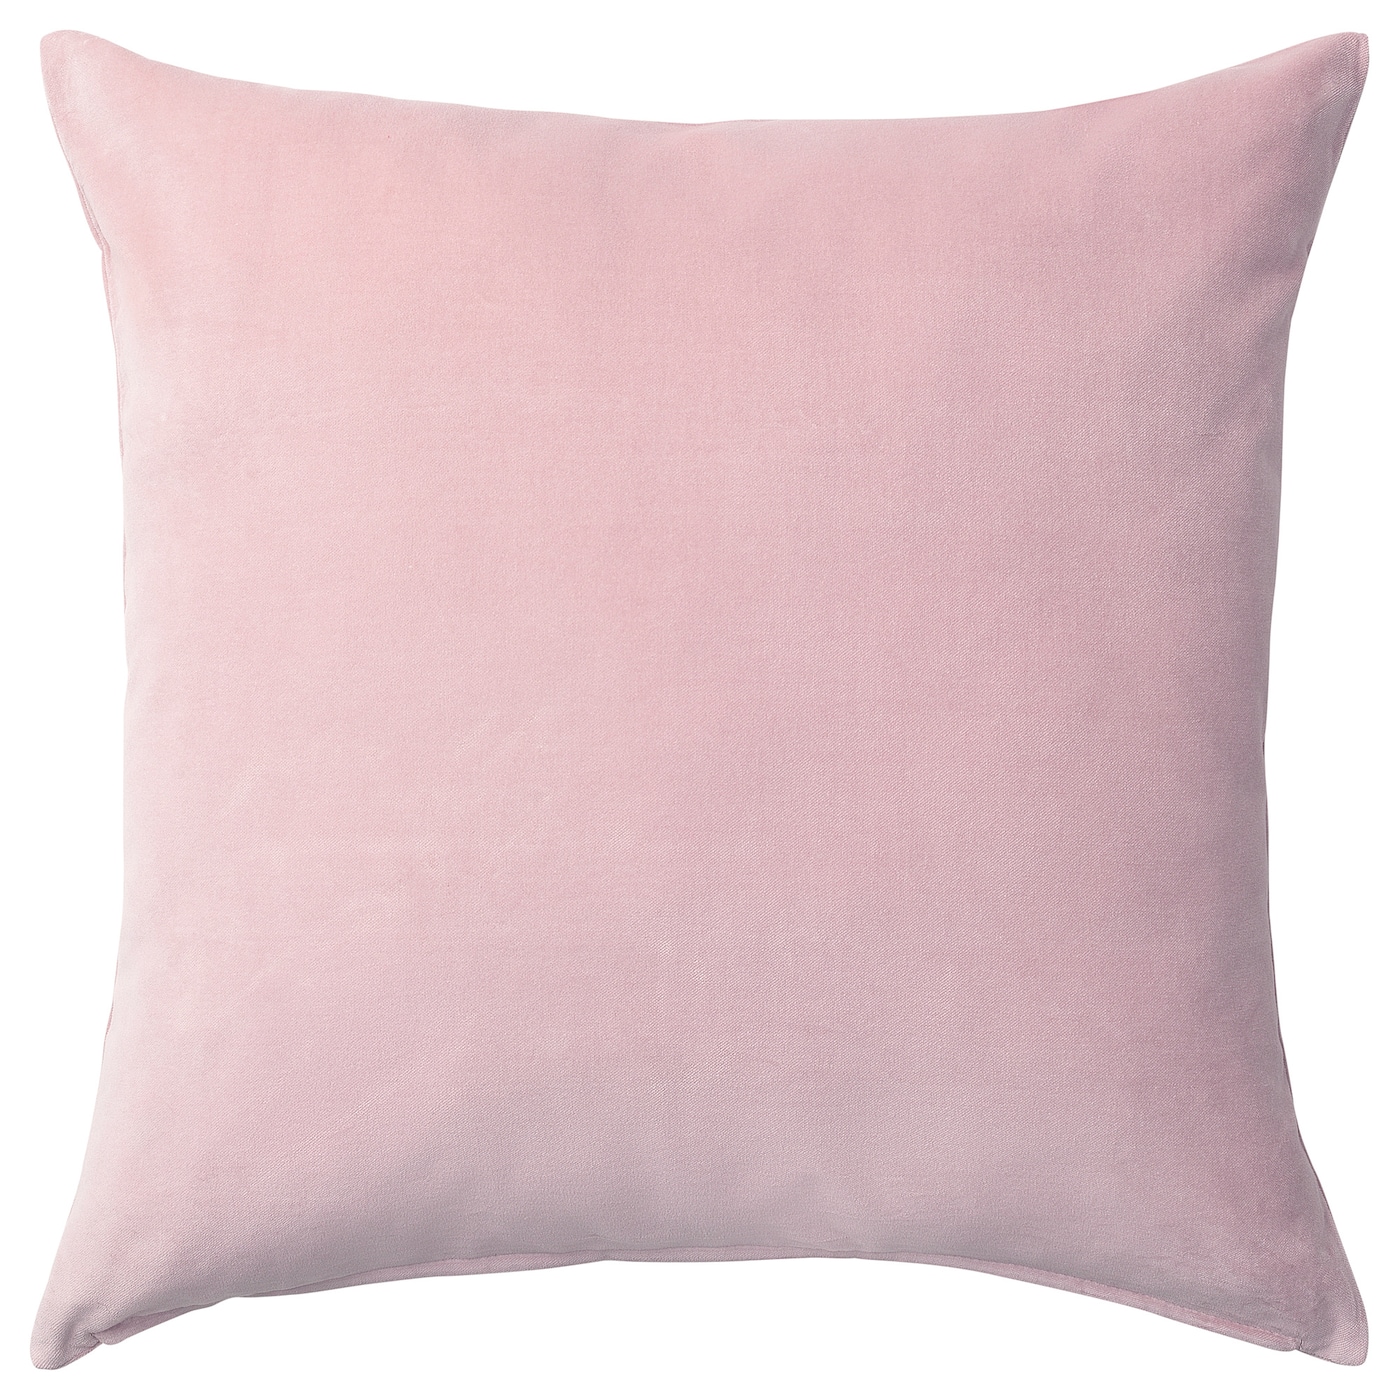 Чехол на подушку - SANELA IKEA/ САНЕЛА ИКЕА, 50х50  см, светло-розовый